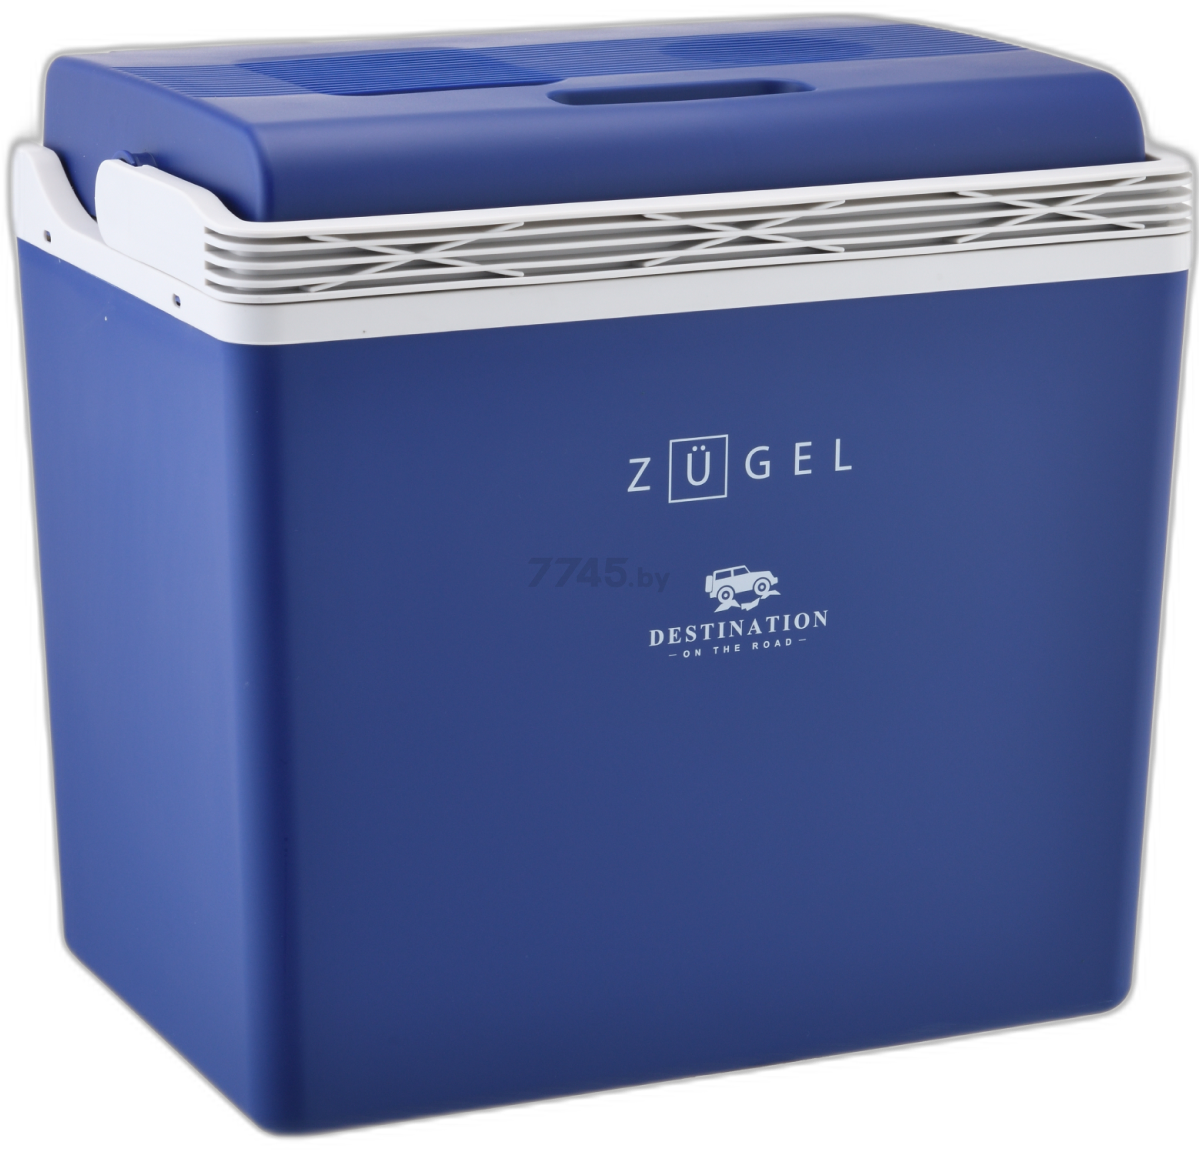 Автохолодильник ZUGEL ZCR30 синий - Фото 2